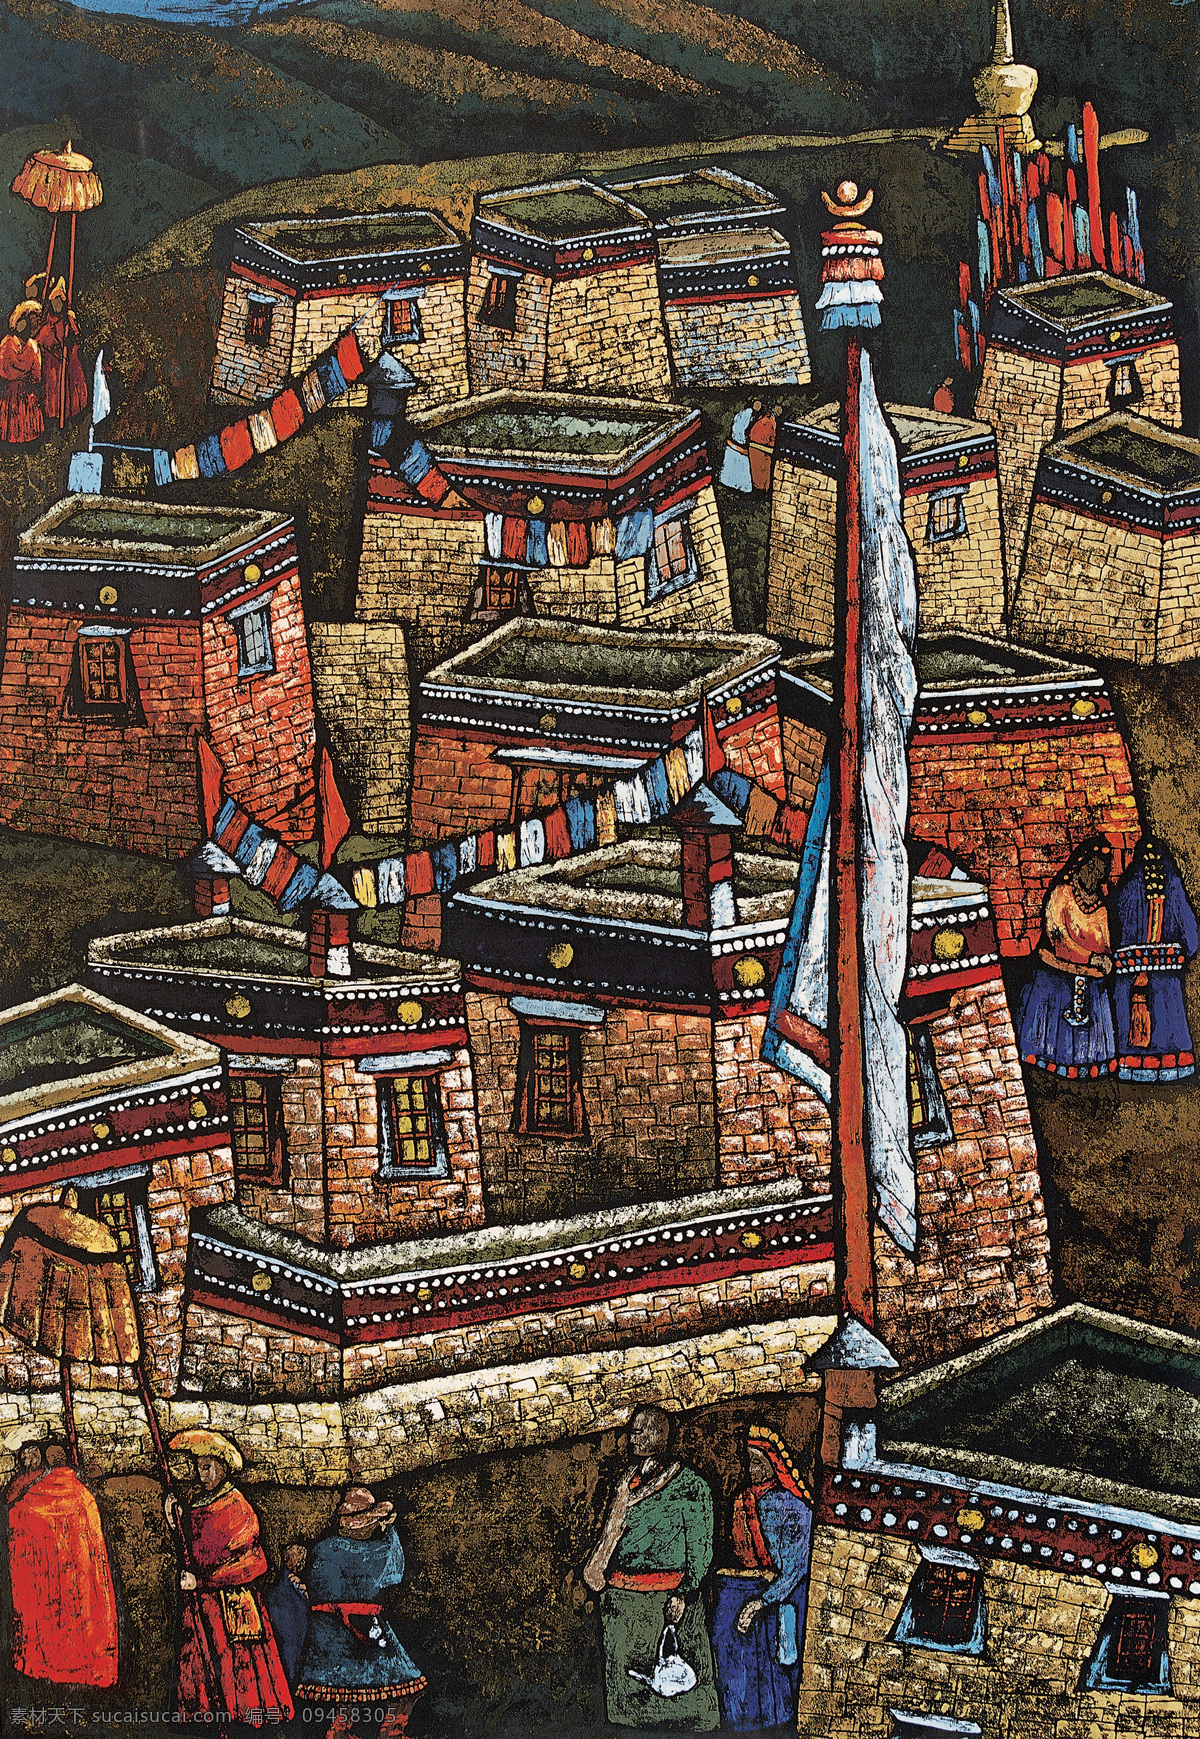 版画 作品 藏族 抽象 抽象画 抽象色彩 绘画 精美 民族 手绘 西藏 付勇 木版 祥巴 艺术 文化艺术